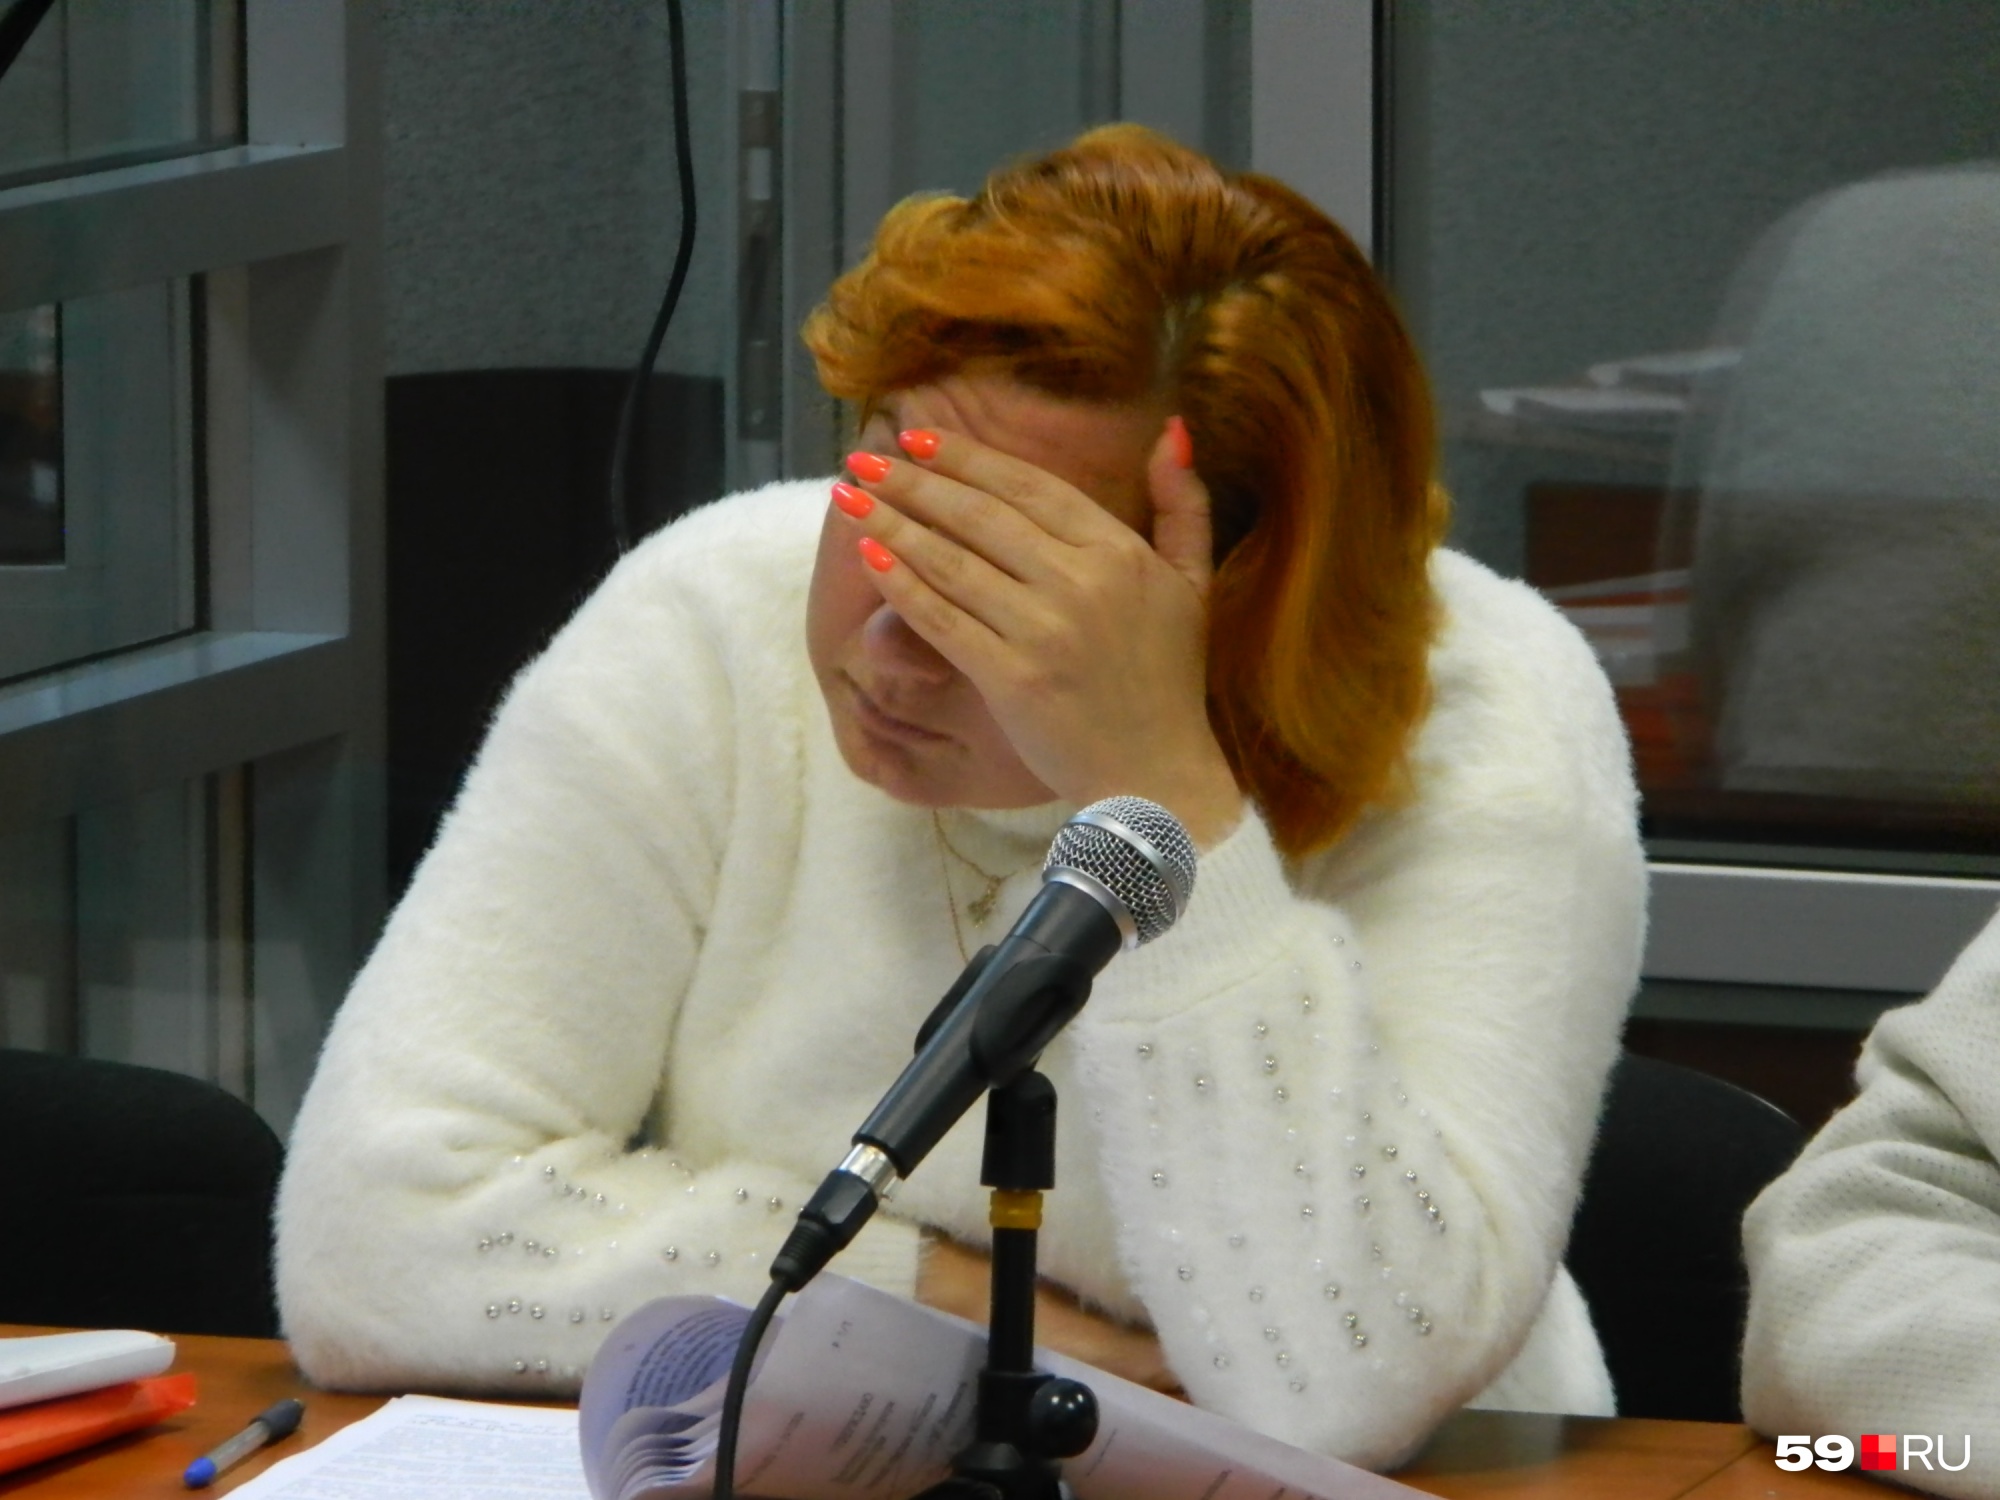 Следовательница Валентина Плешкова на суде по обвинению ее в подделке документов прикрывала лицо рукой — от фотографов